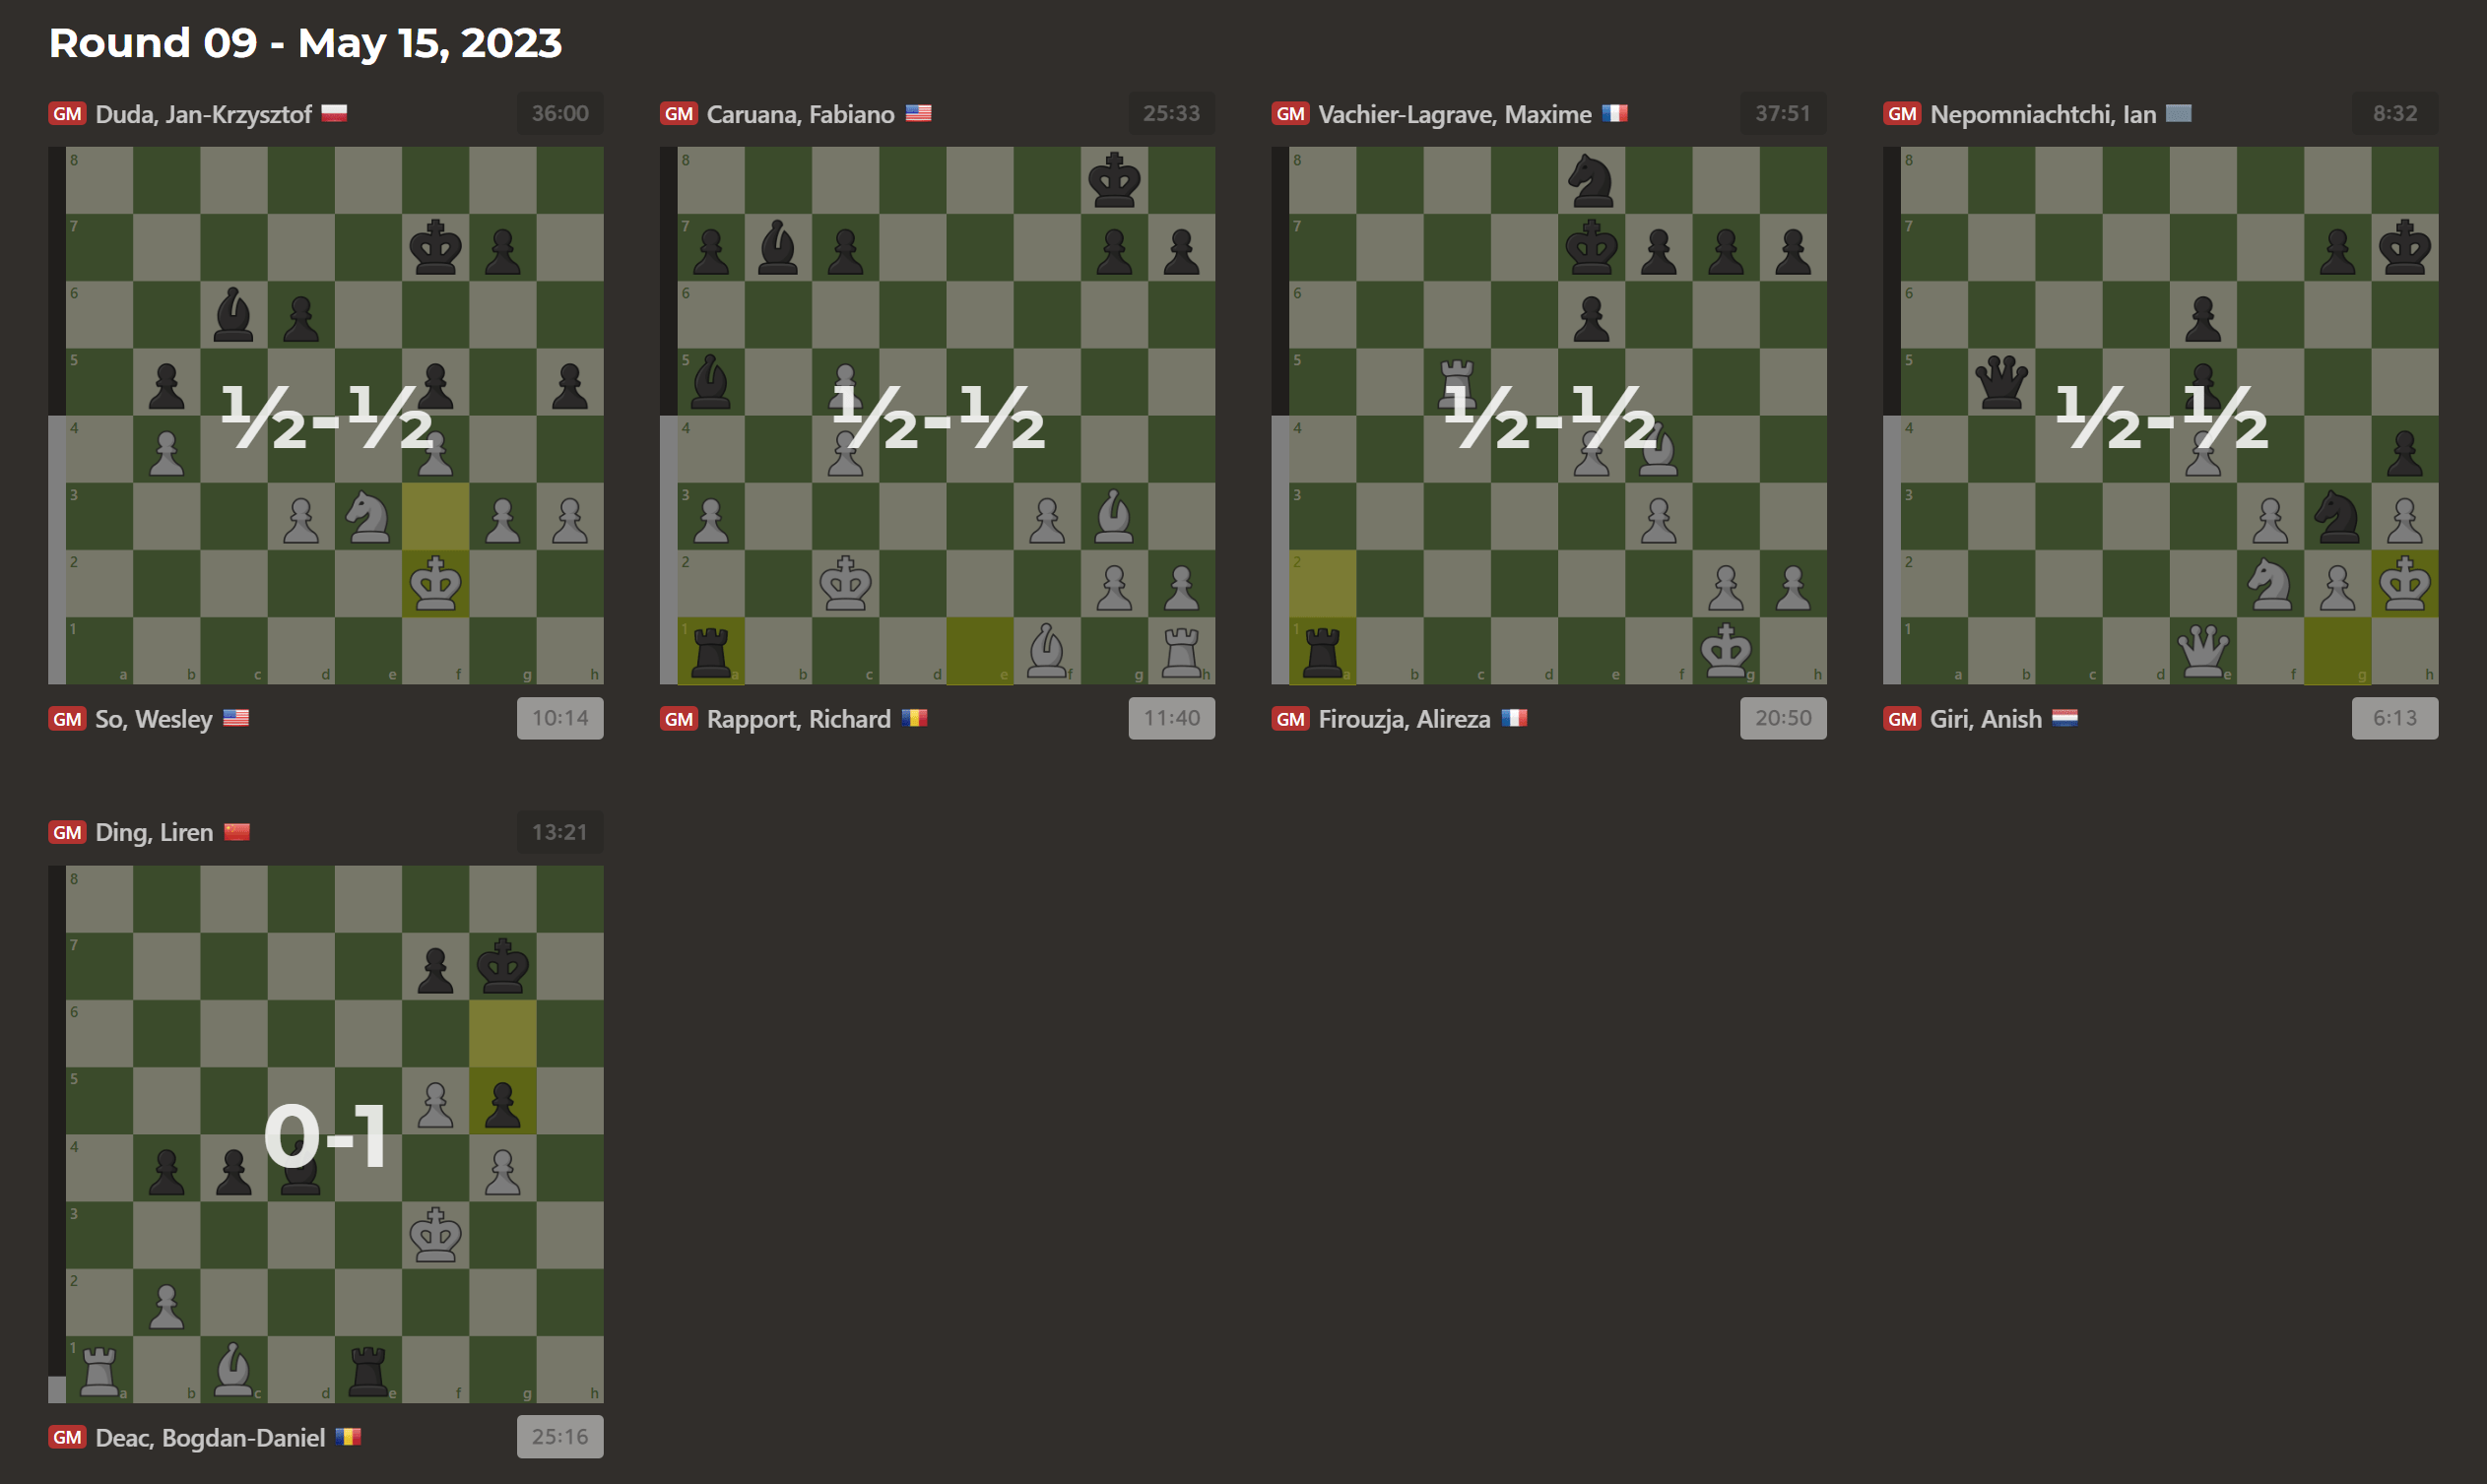 2023 Superbet Chess Classic: Day 5 Recap